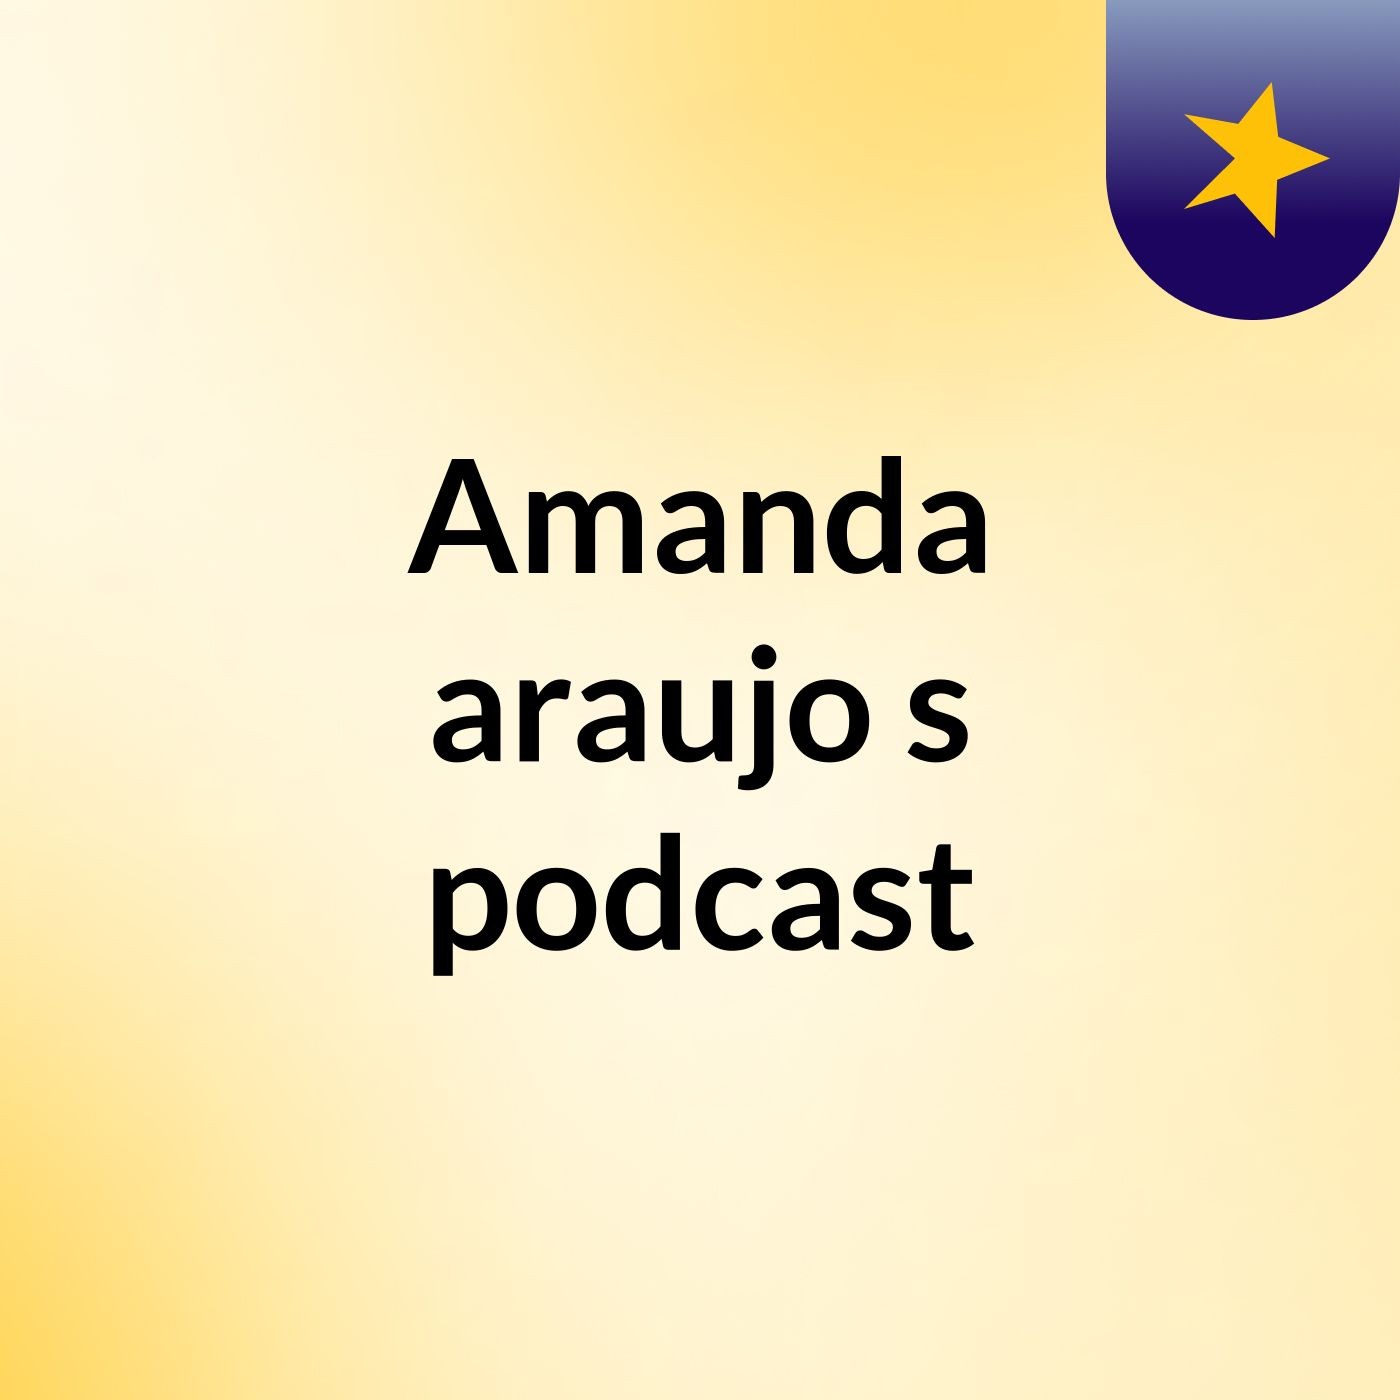 Amanda araujo's podcast